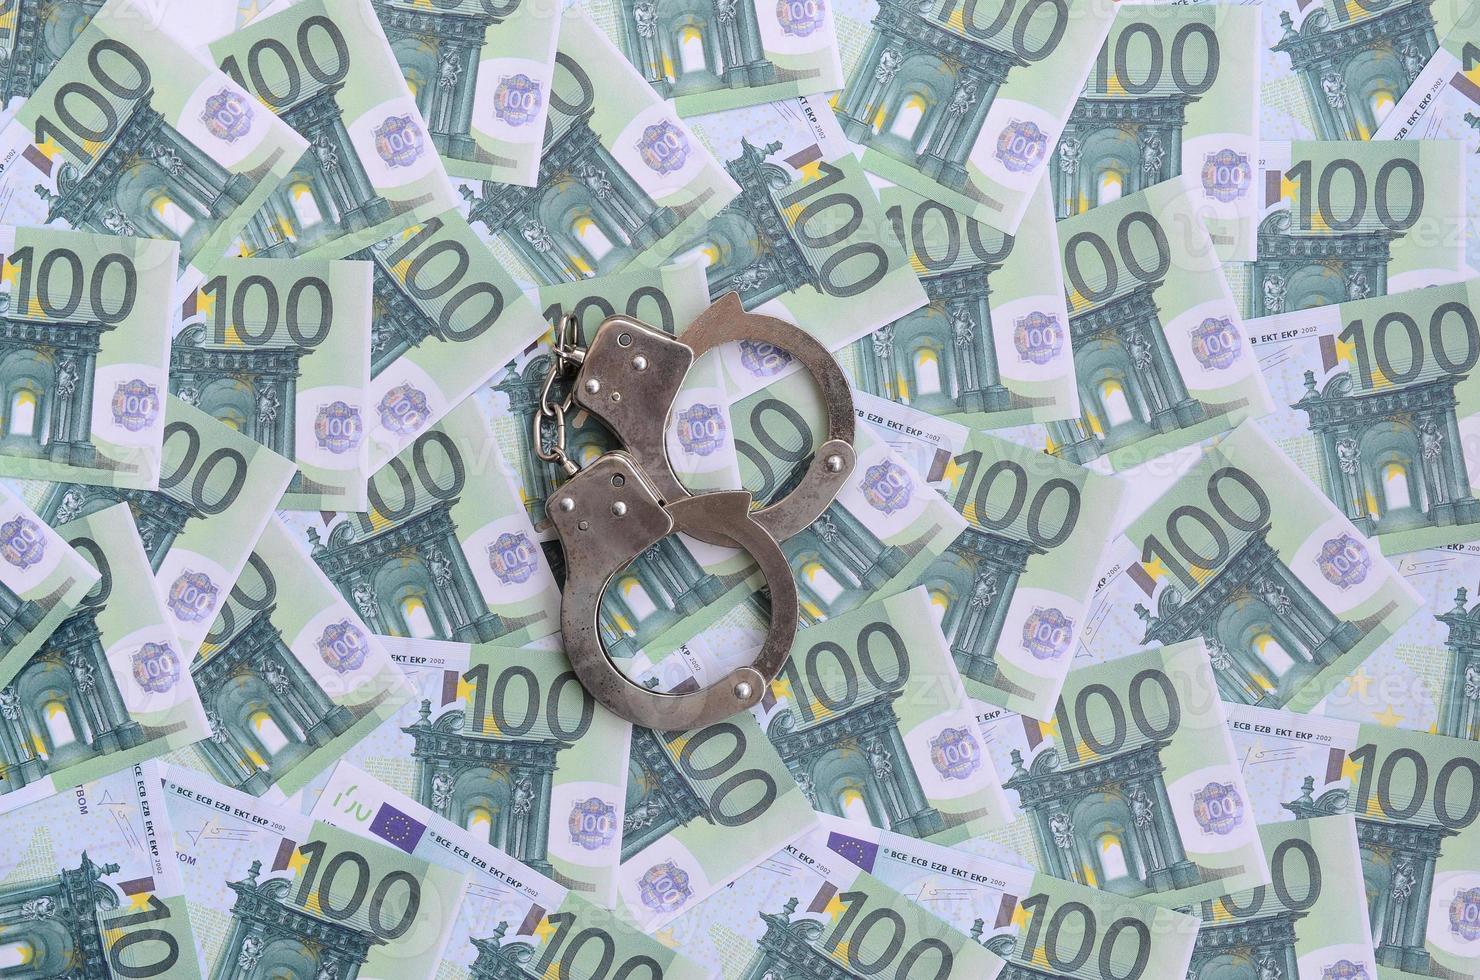 Politie handboeien leugens Aan een reeks van groen monetair denominaties van 100 euro. een veel van geld vormen een eindeloos hoop foto